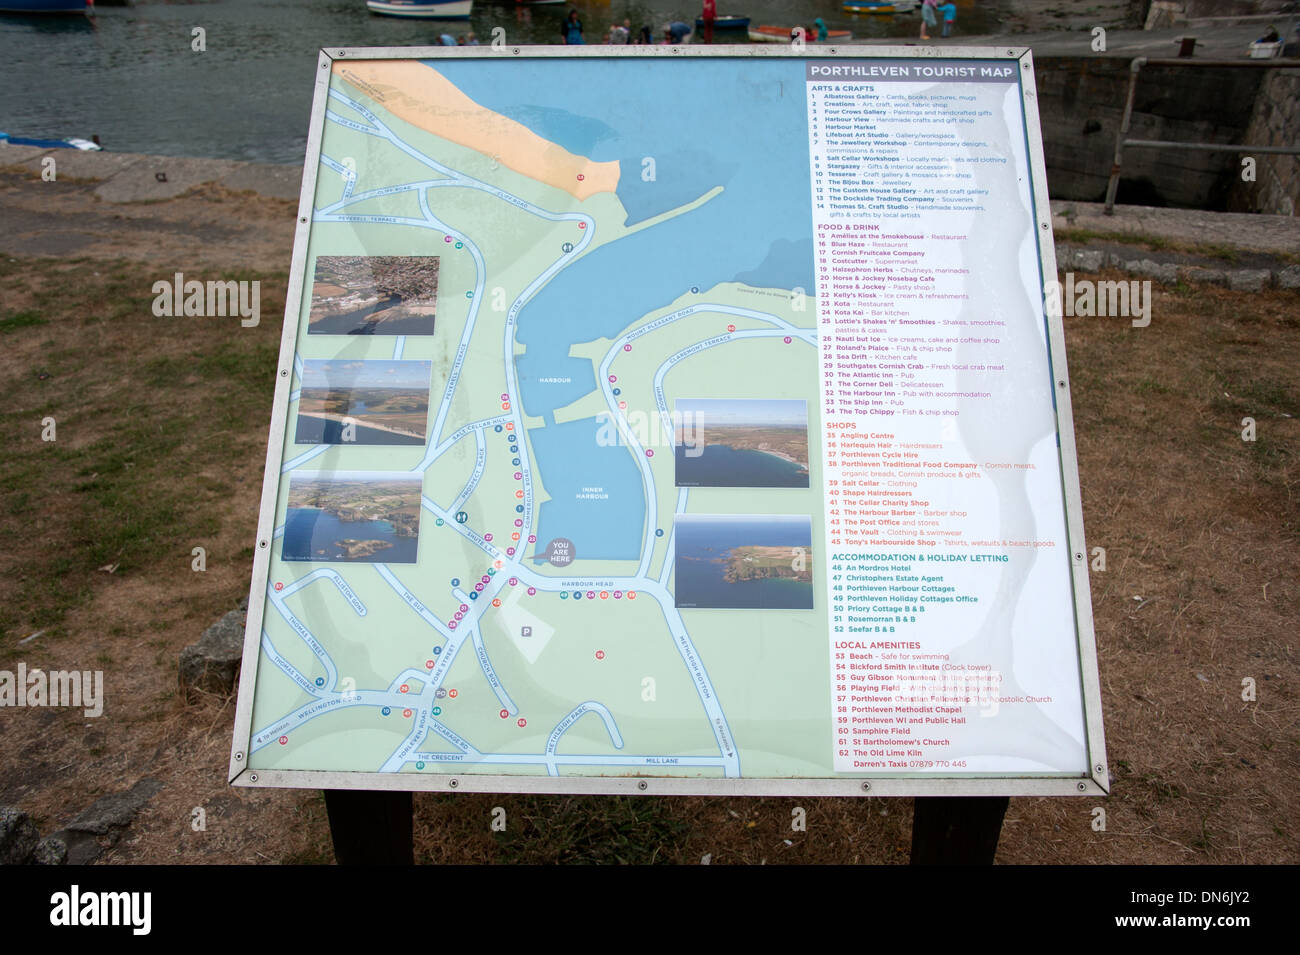 Porthleven Informazioni turistiche Mappa della città Cornwall Regno Unito Foto Stock